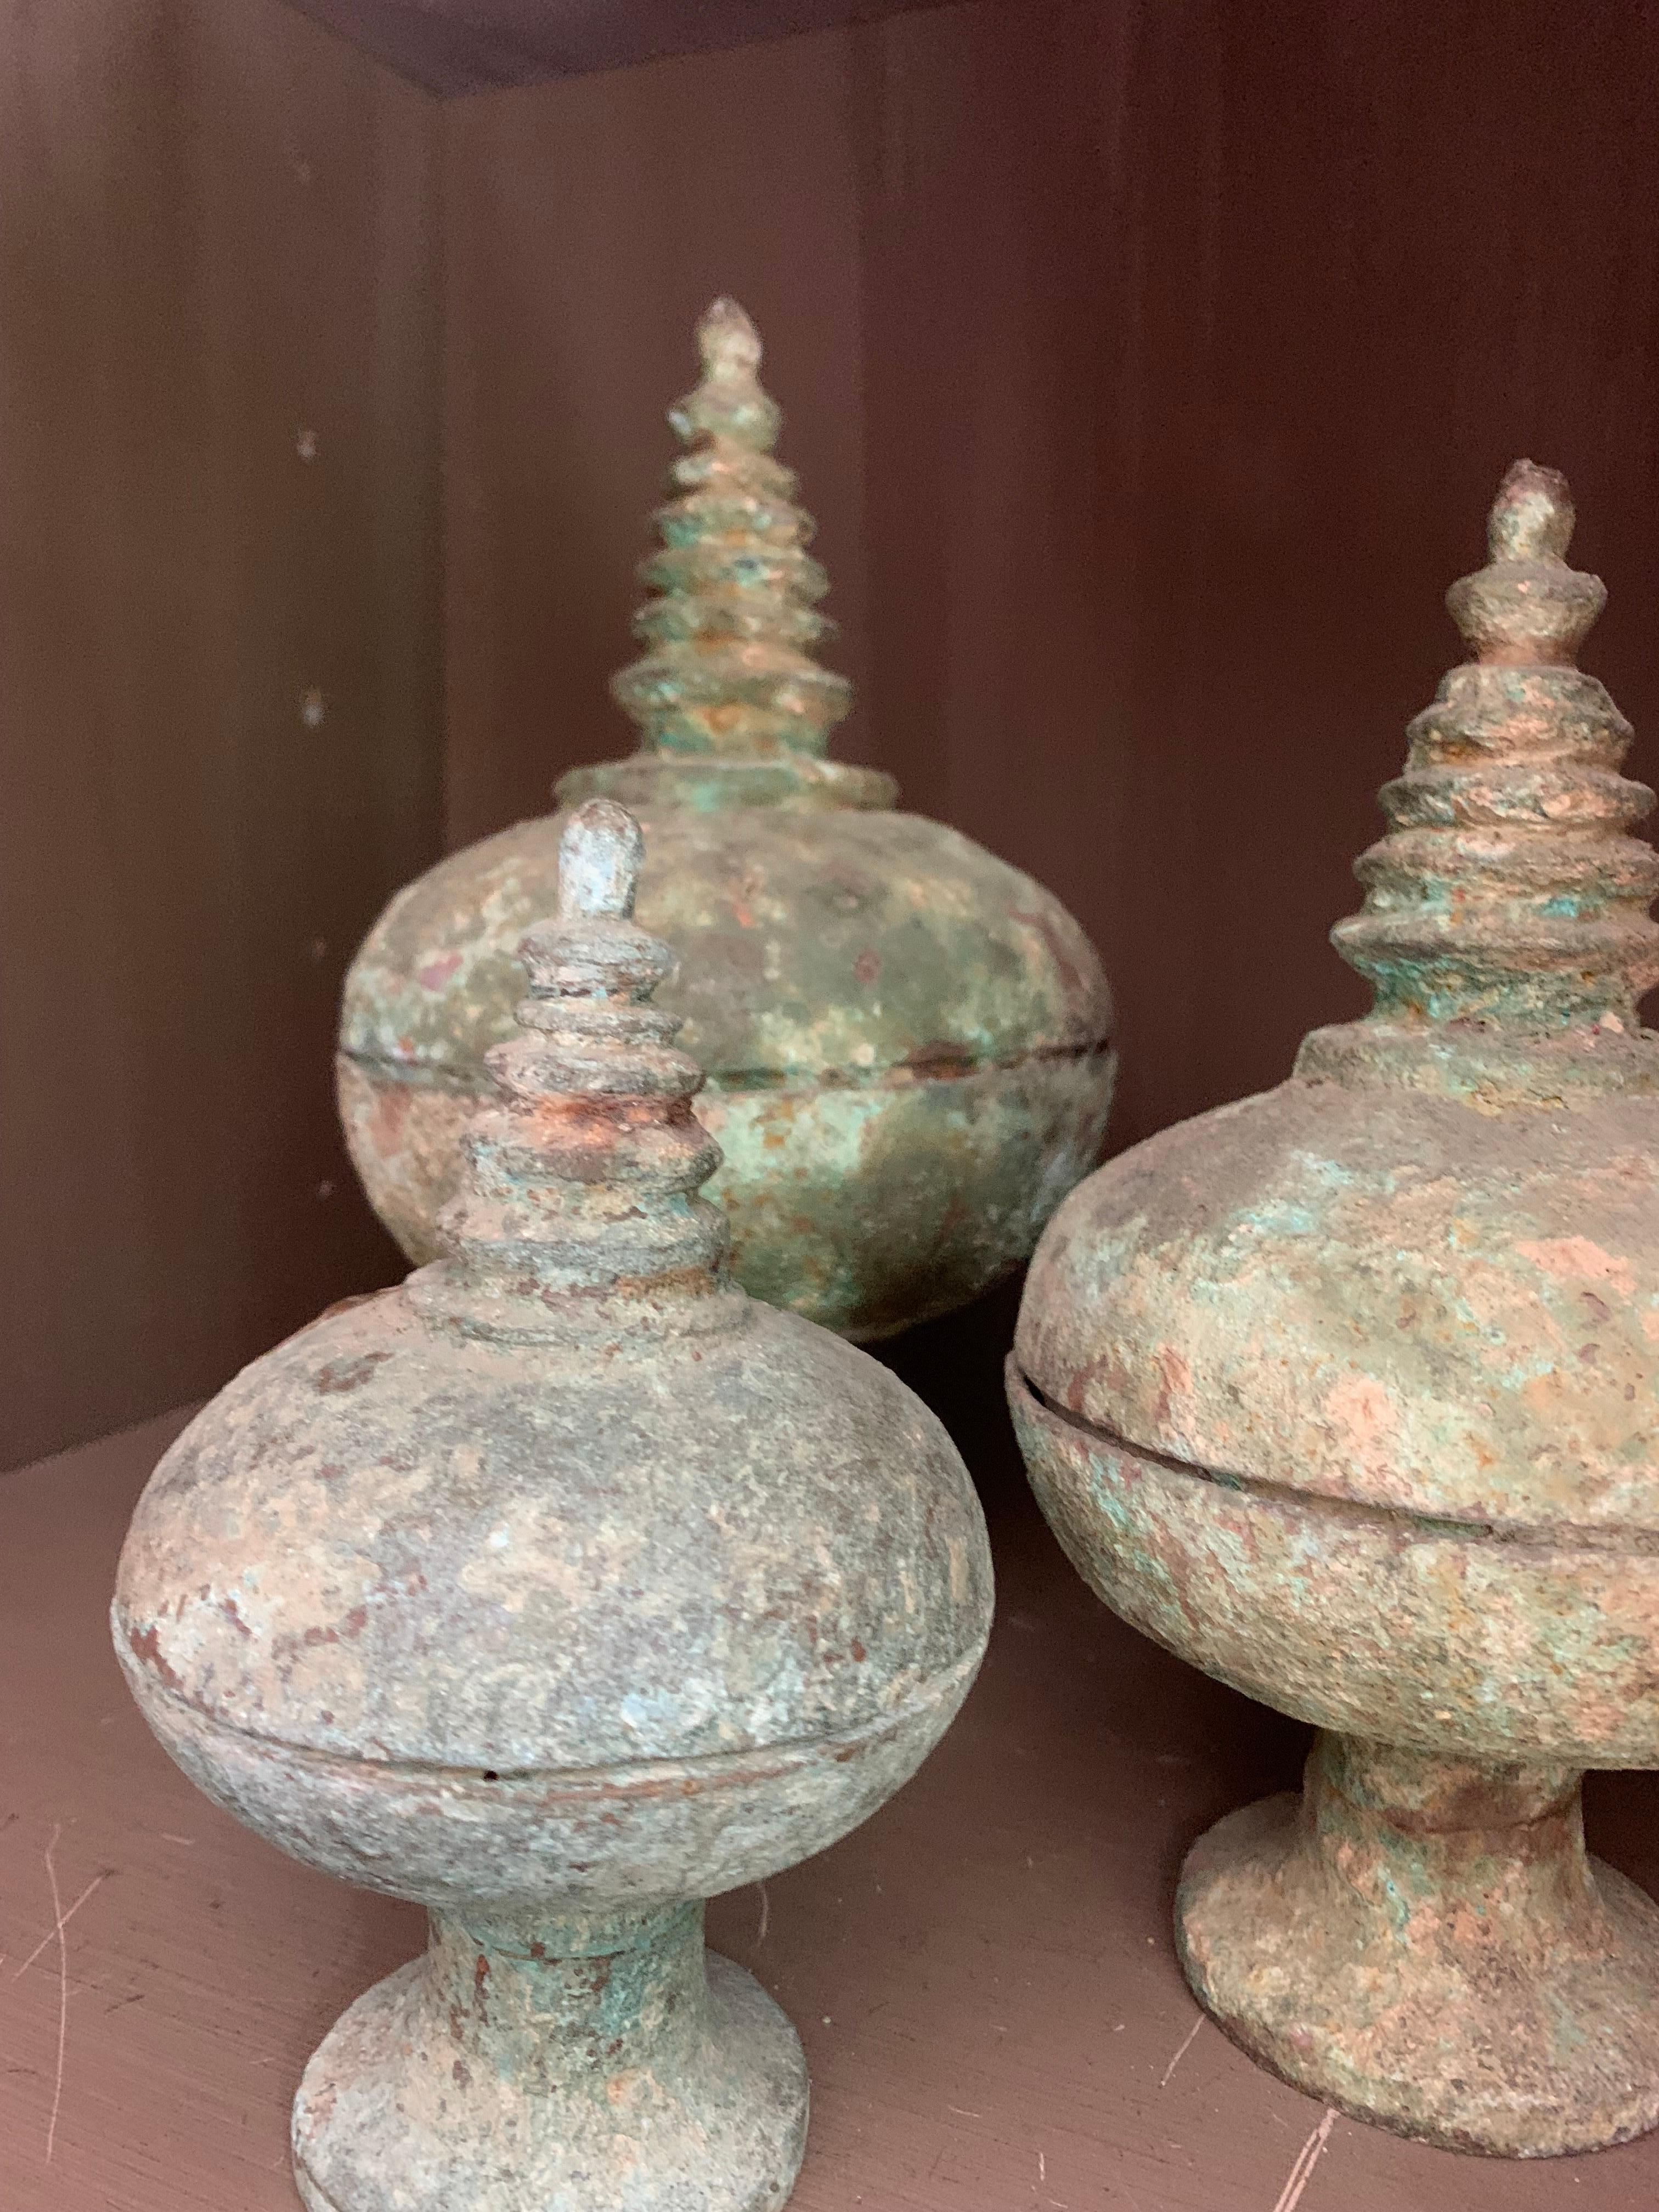 Un ensemble de 3 coupes rituelles chinoises en bronze avec couvercle en forme de pagode. En style archaïque, probablement du 18e ou 19e siècle. Belle patine, pas de fissures.